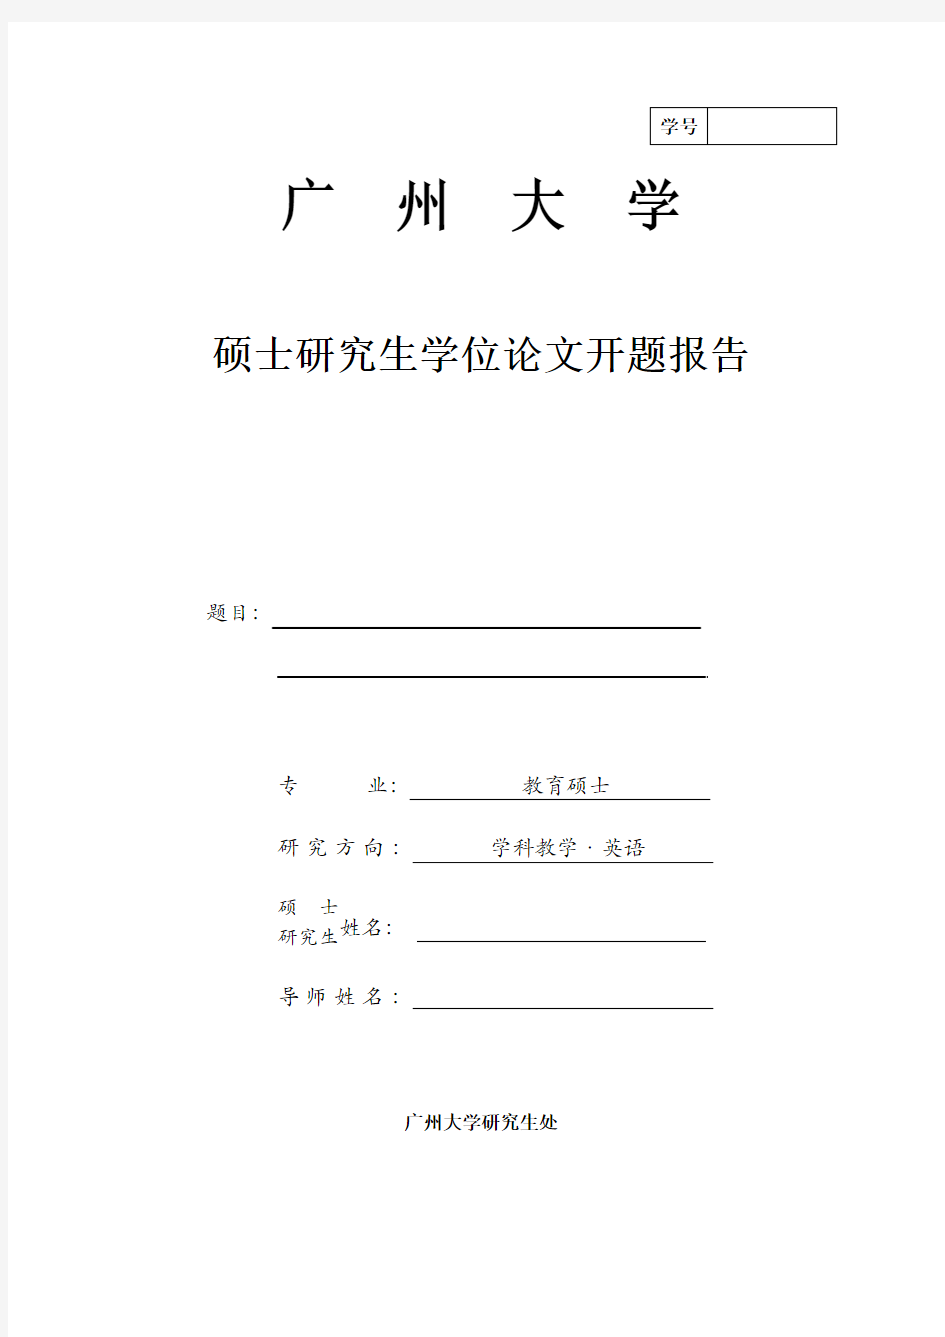 广州大学硕士研究生学位论文开题报告 - 模板